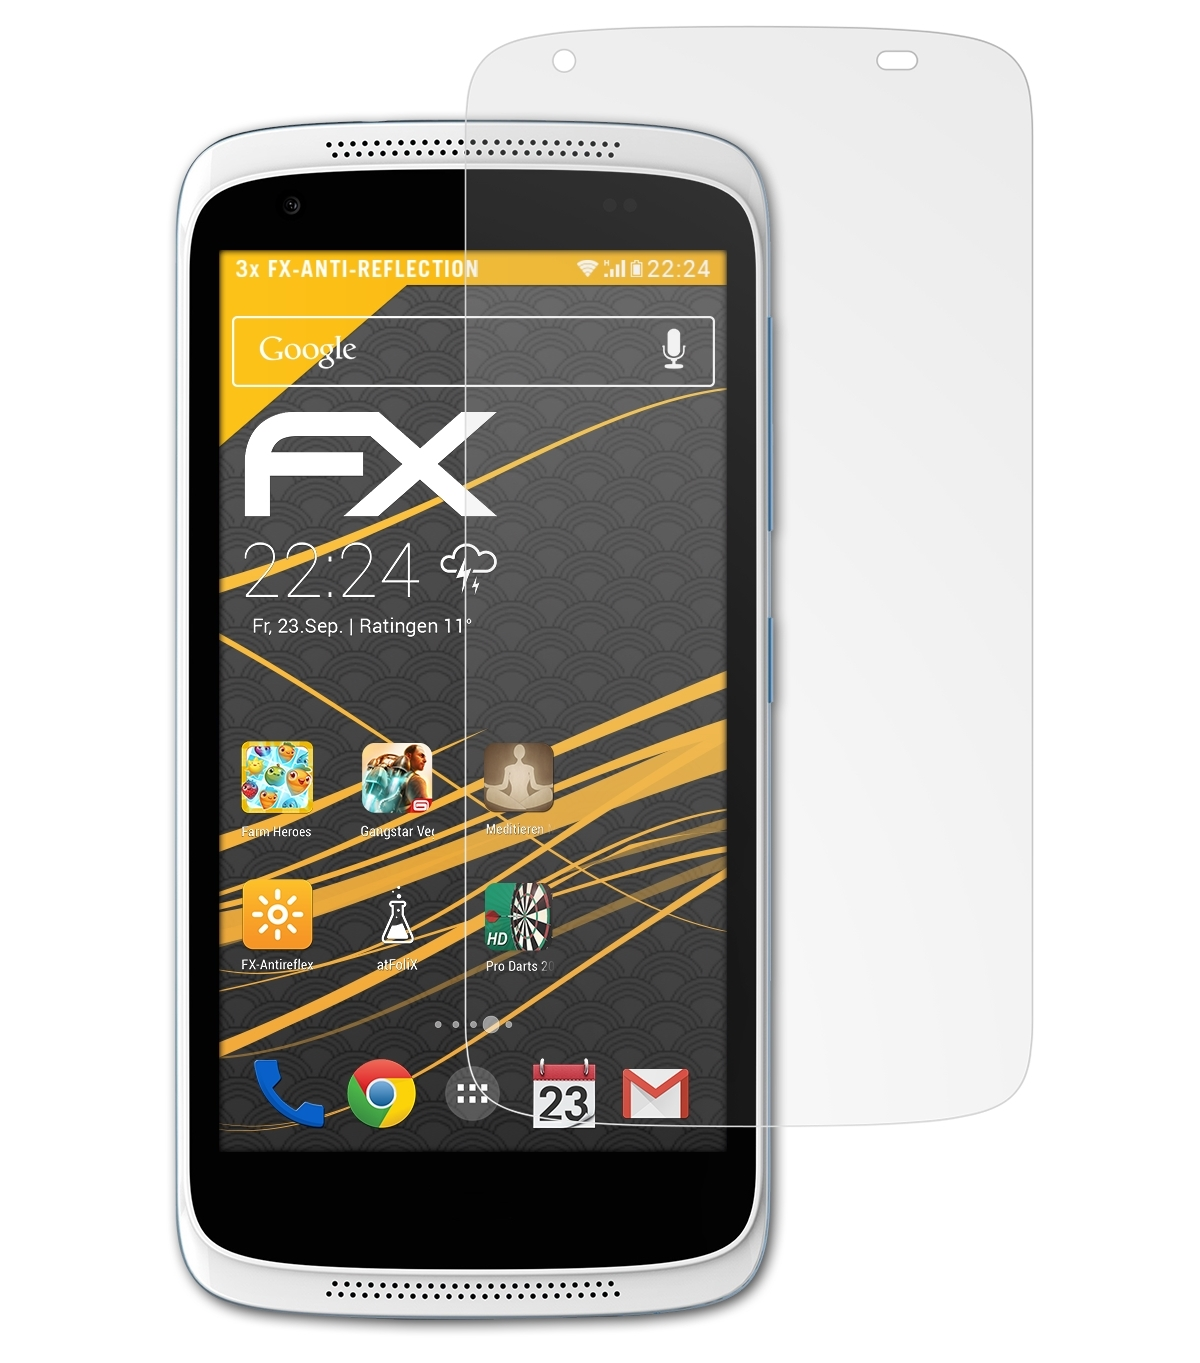 ATFOLIX 3x Desire Displayschutz(für HTC FX-Antireflex 526G+)